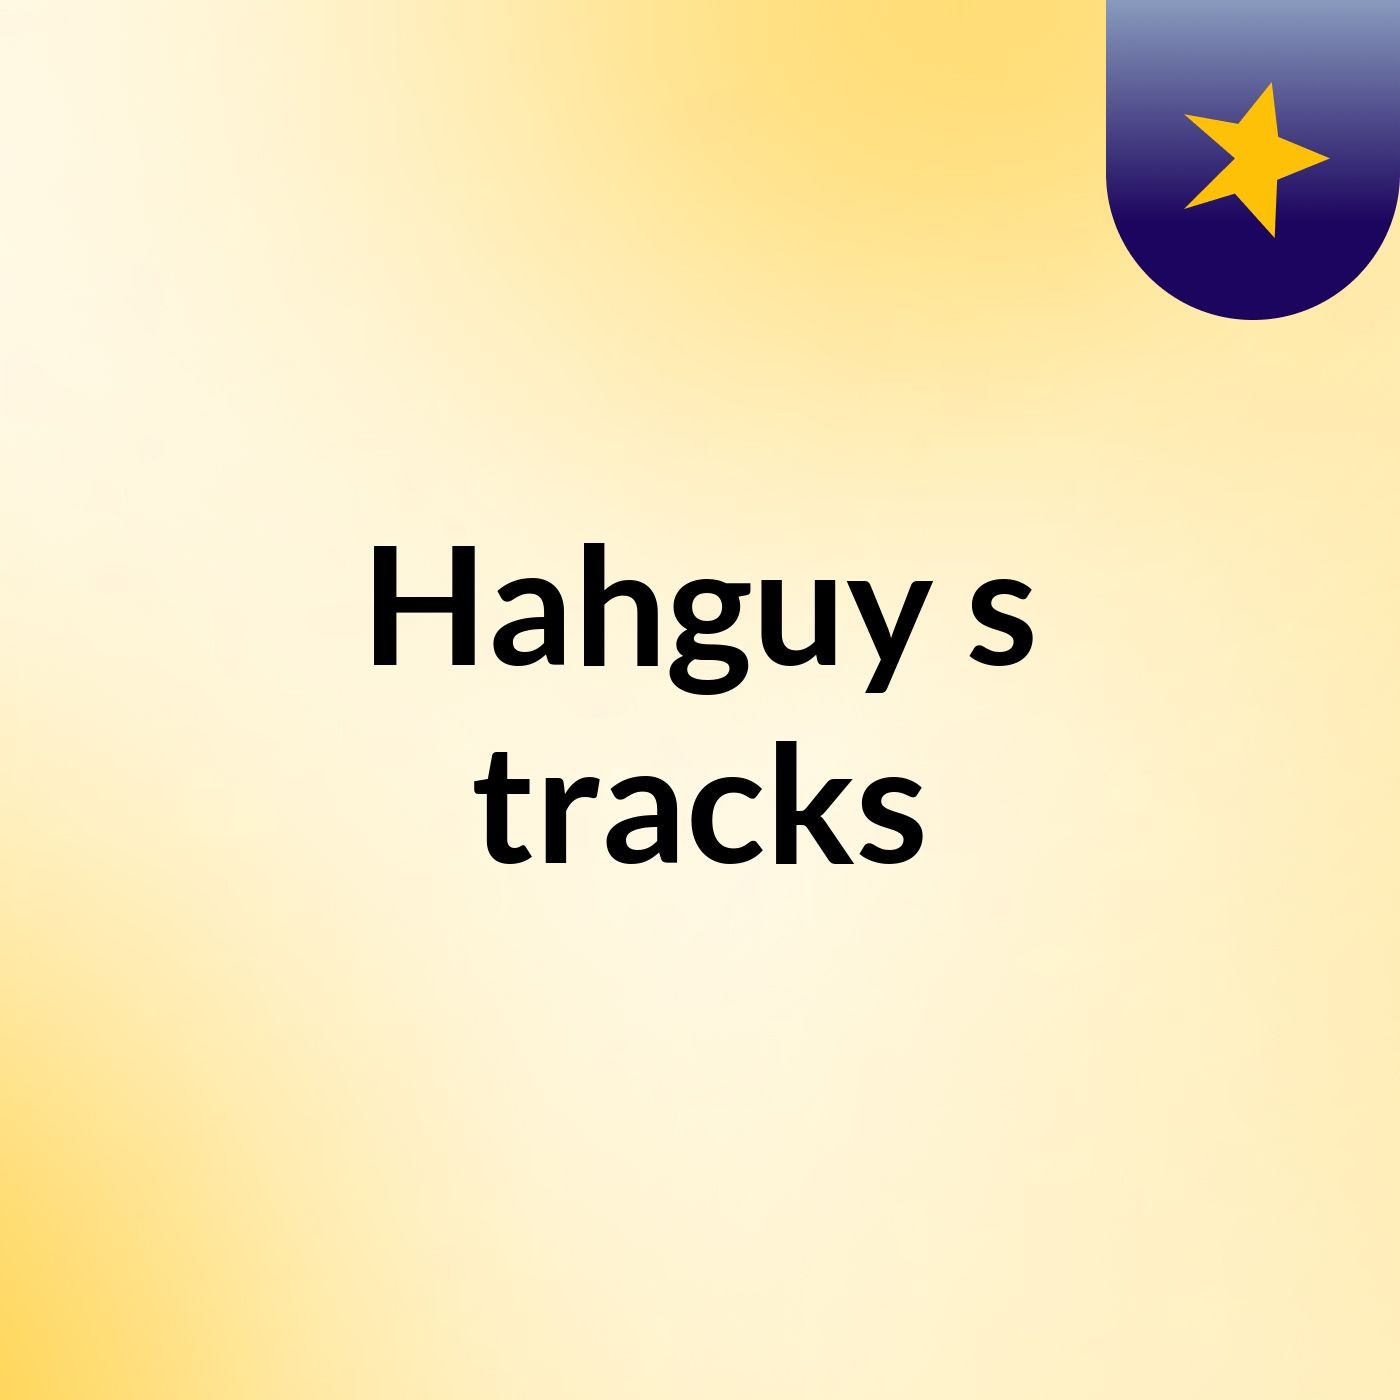 Hahguy's tracks